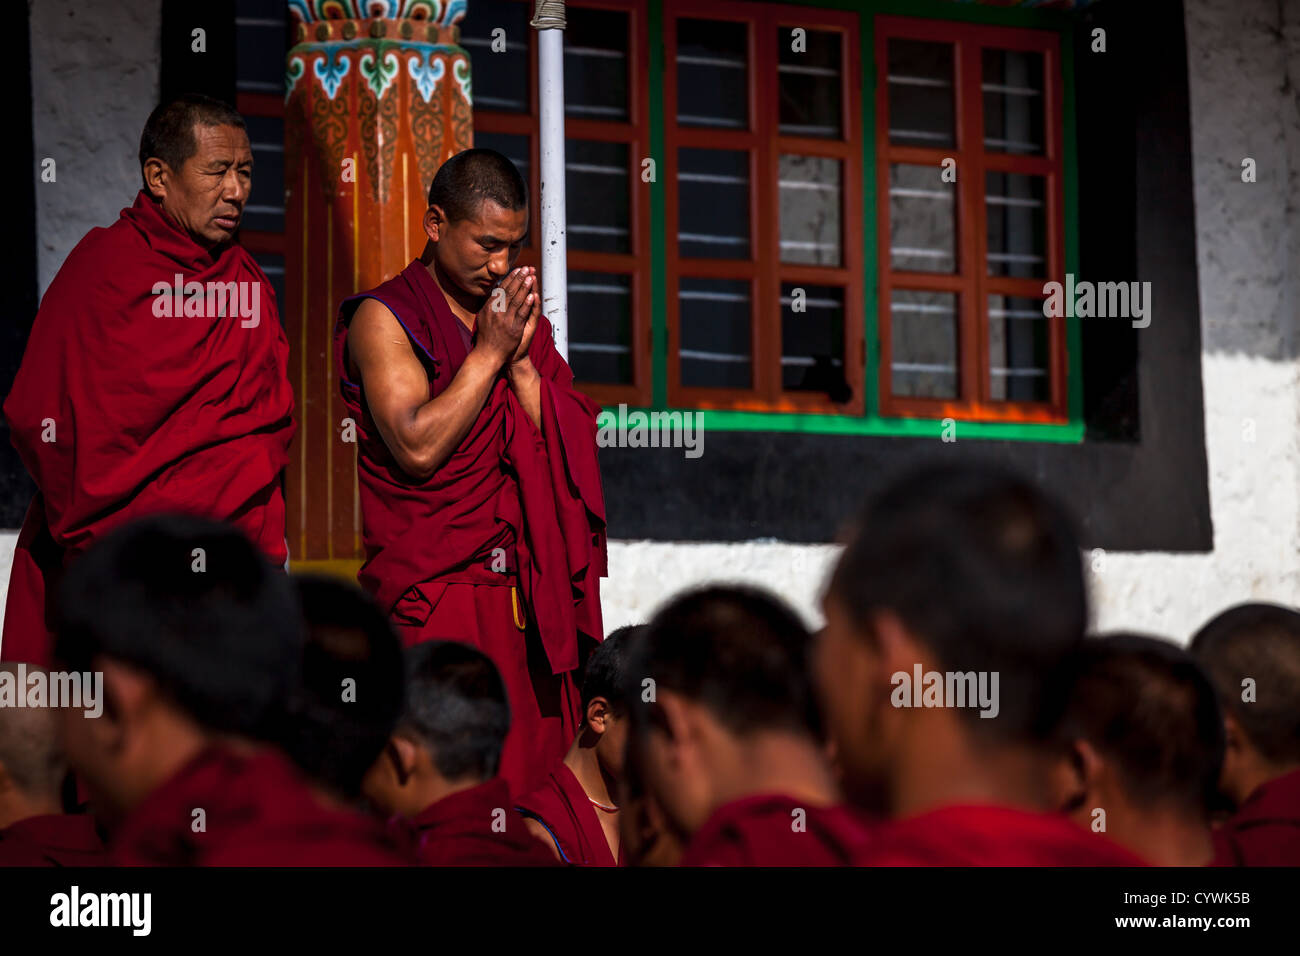 Mönche beten Outisde bei Galden Namgey Lhatse Kloster Tawang, Arunachal Pradesh, Indien Stockfoto